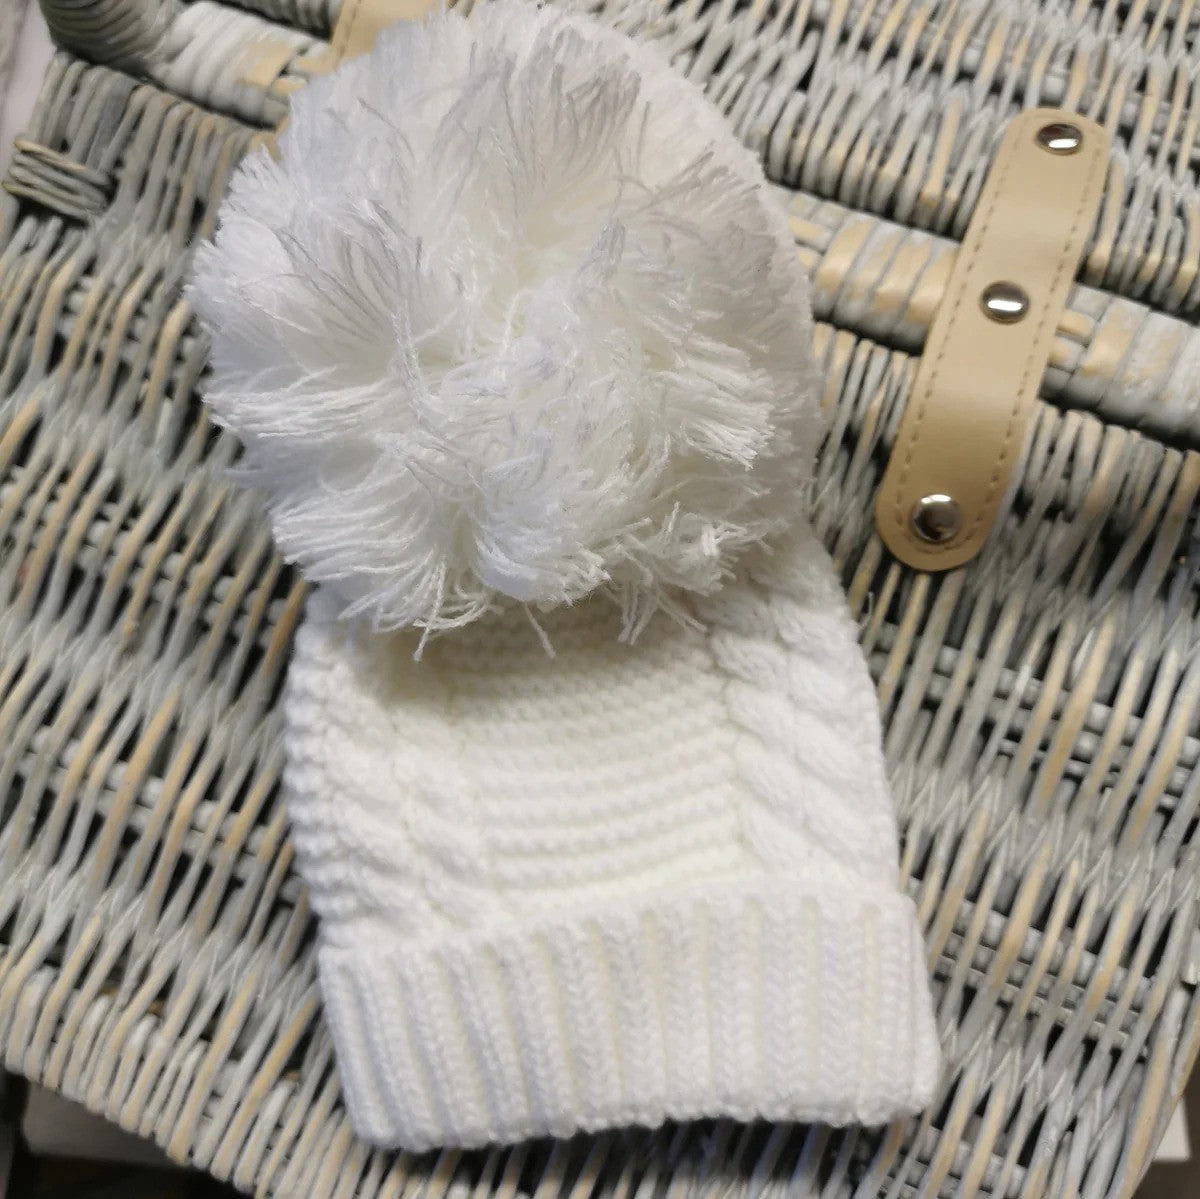 White knit pom-pom hat